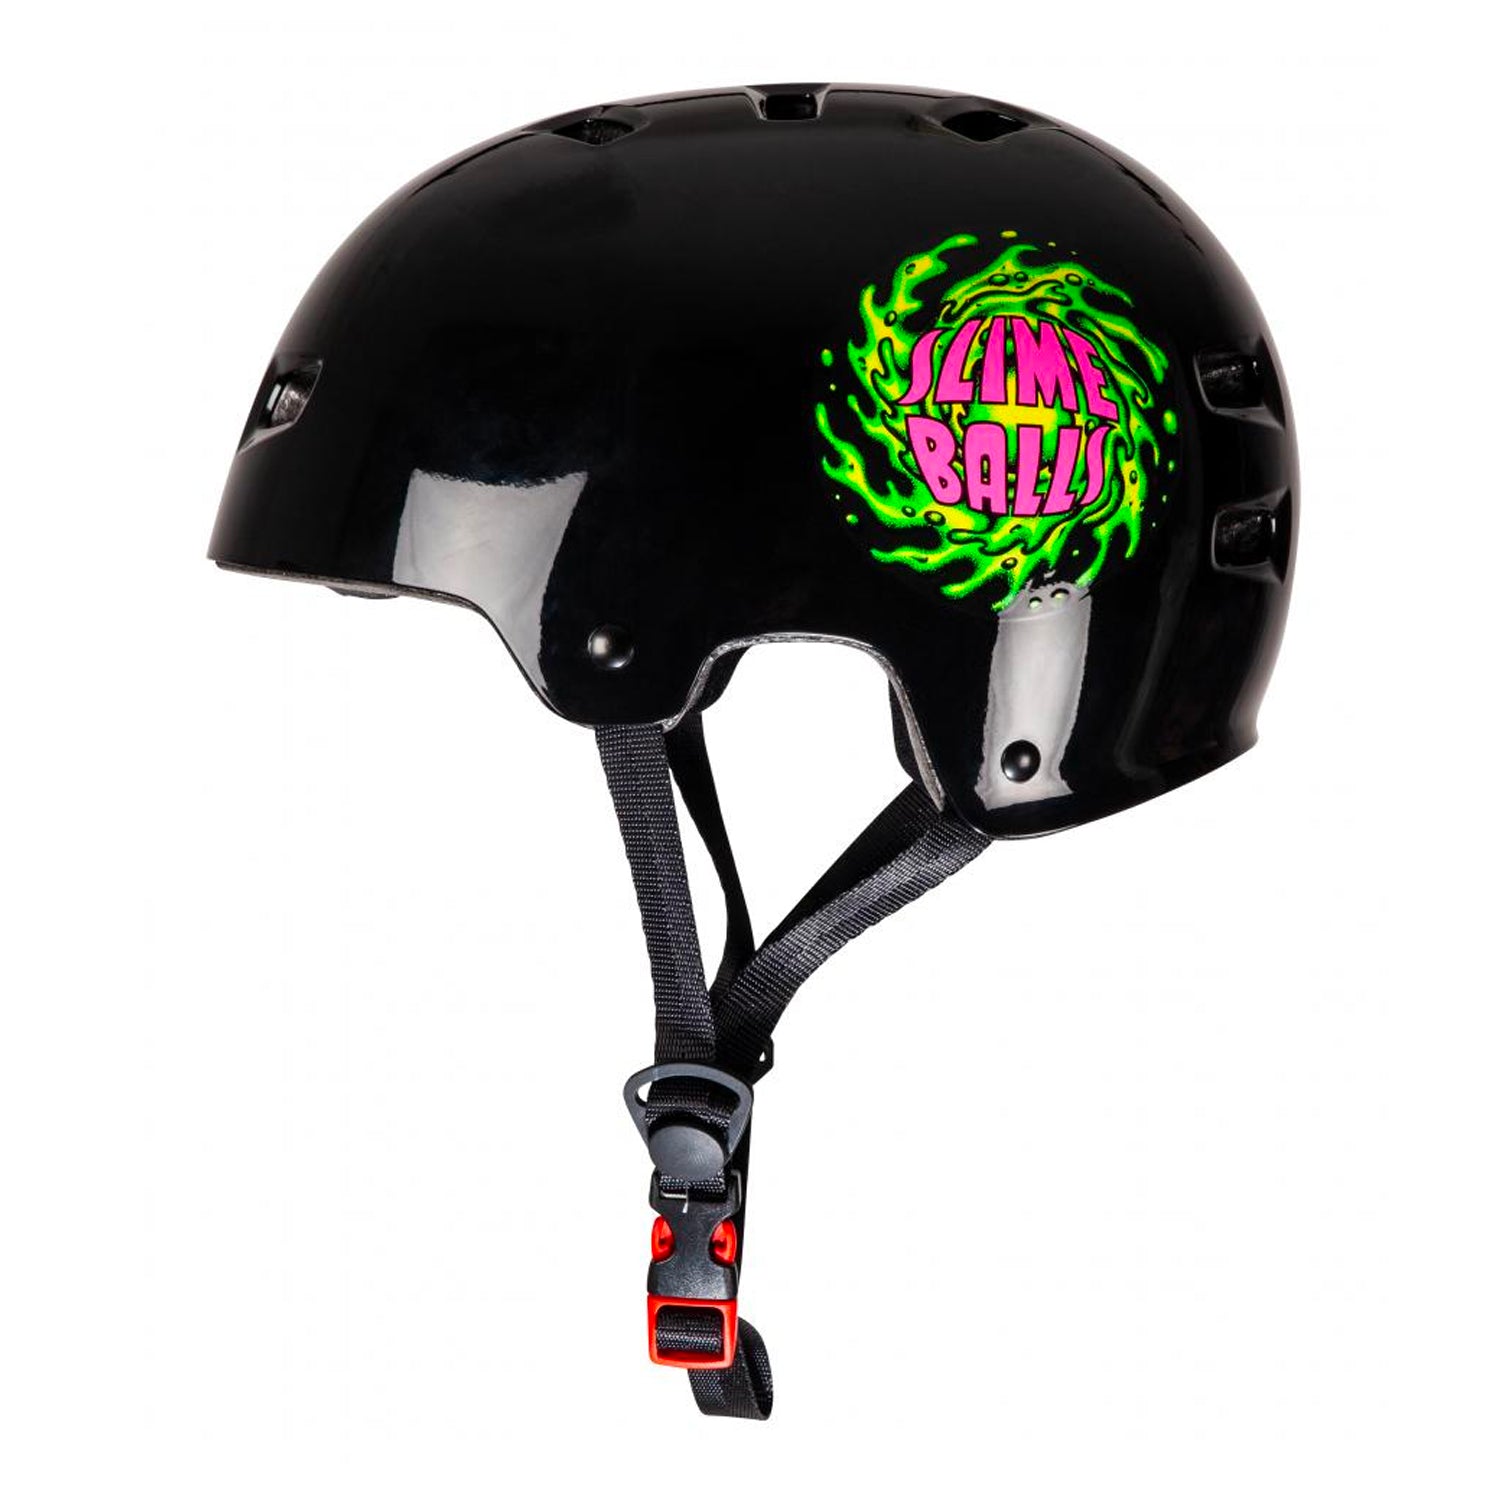 Bullet x Slime Balls Helmet Slime Logo - Black - Prime Delux Store